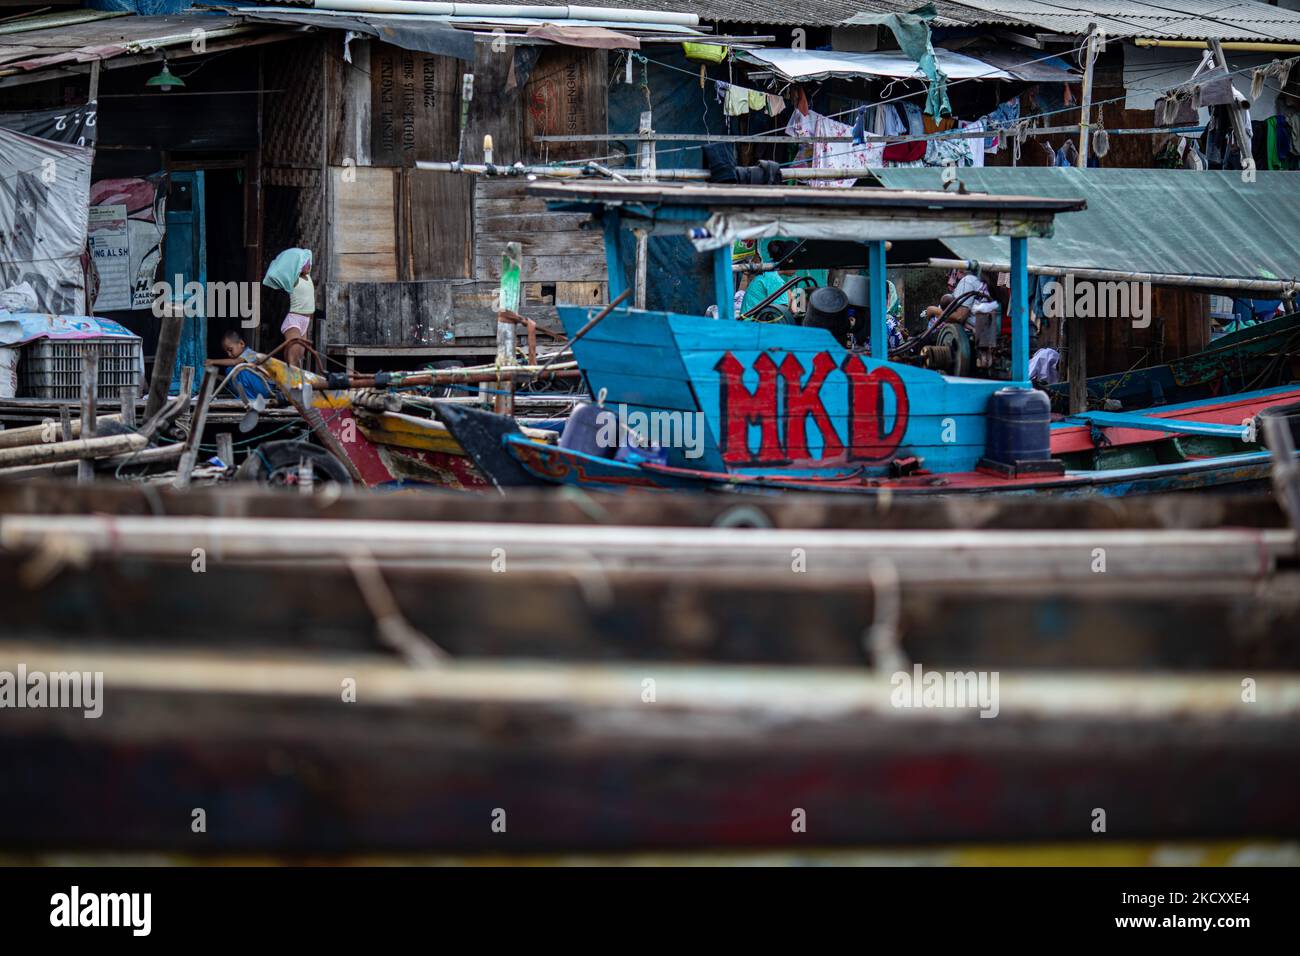 La vie quotidienne à la rivière Ldak Cilincincing, dans le nord de Jakarta, en Indonésie. Les activités des résidents de Jakarta, en particulier sur la côte, avec le déclin des infections à coronavirus, commencent à augmenter avec les activités de pêche, le chargement et le déchargement des marchandises, et d'autres. (Photo par Donal Husni/NurPhoto) Banque D'Images